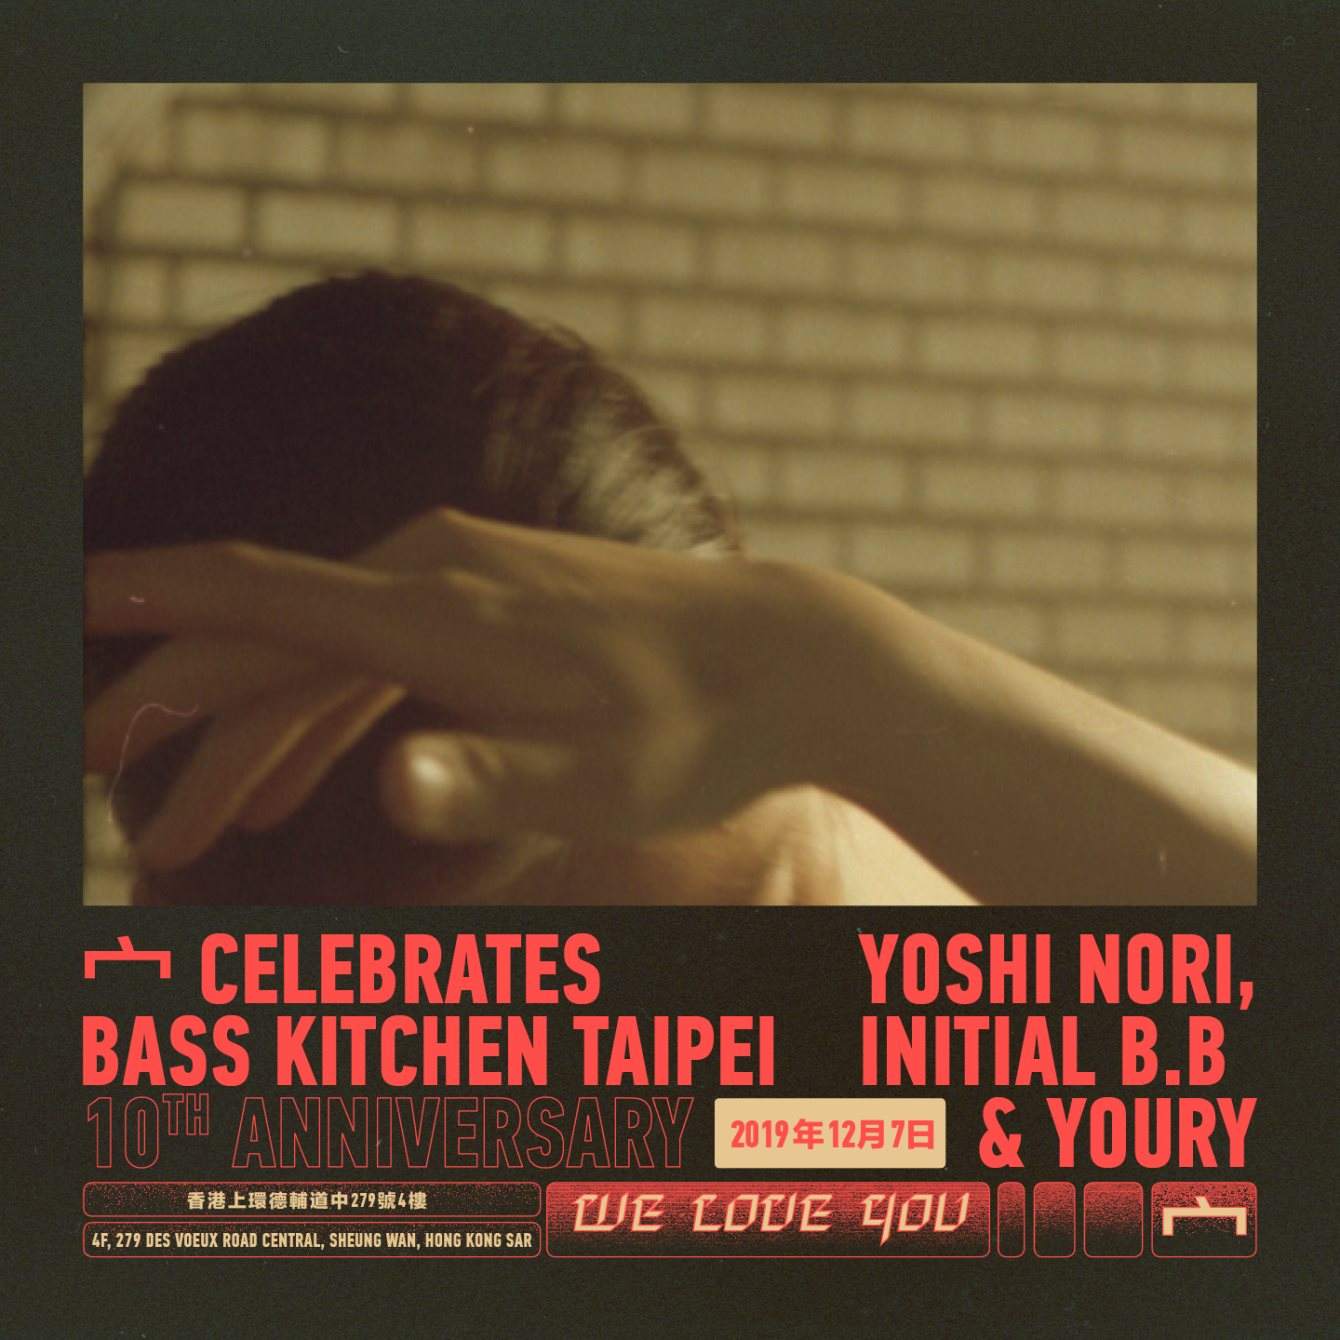 宀 Celebrates Bass Kitchen Taipei 10th Anniversary with Yoshi Nori, Initials B.B. and Youry - Página frontal